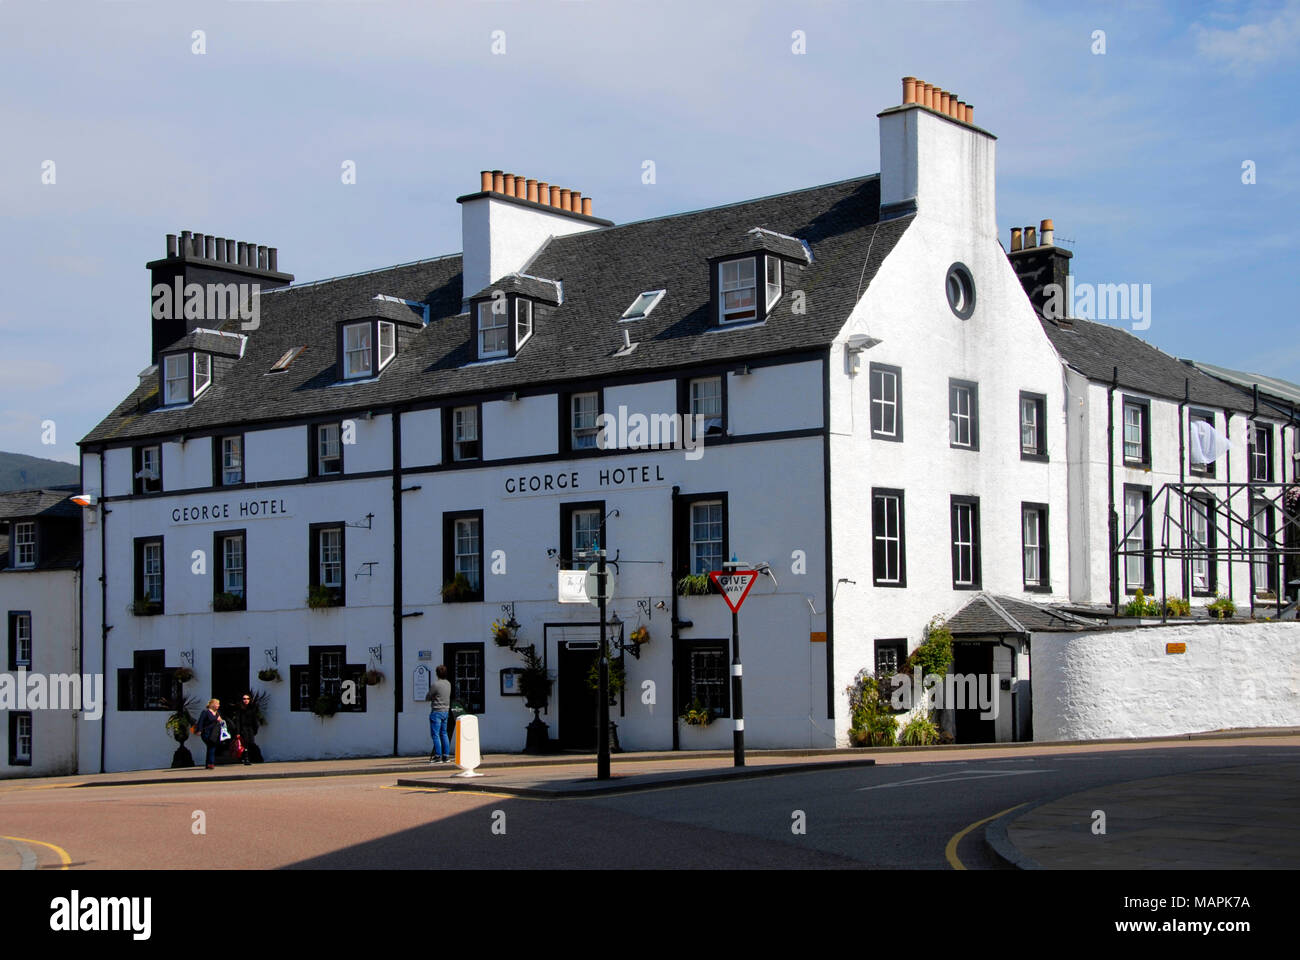 The George Hotel, Inveraray, Scotland Stock Photo